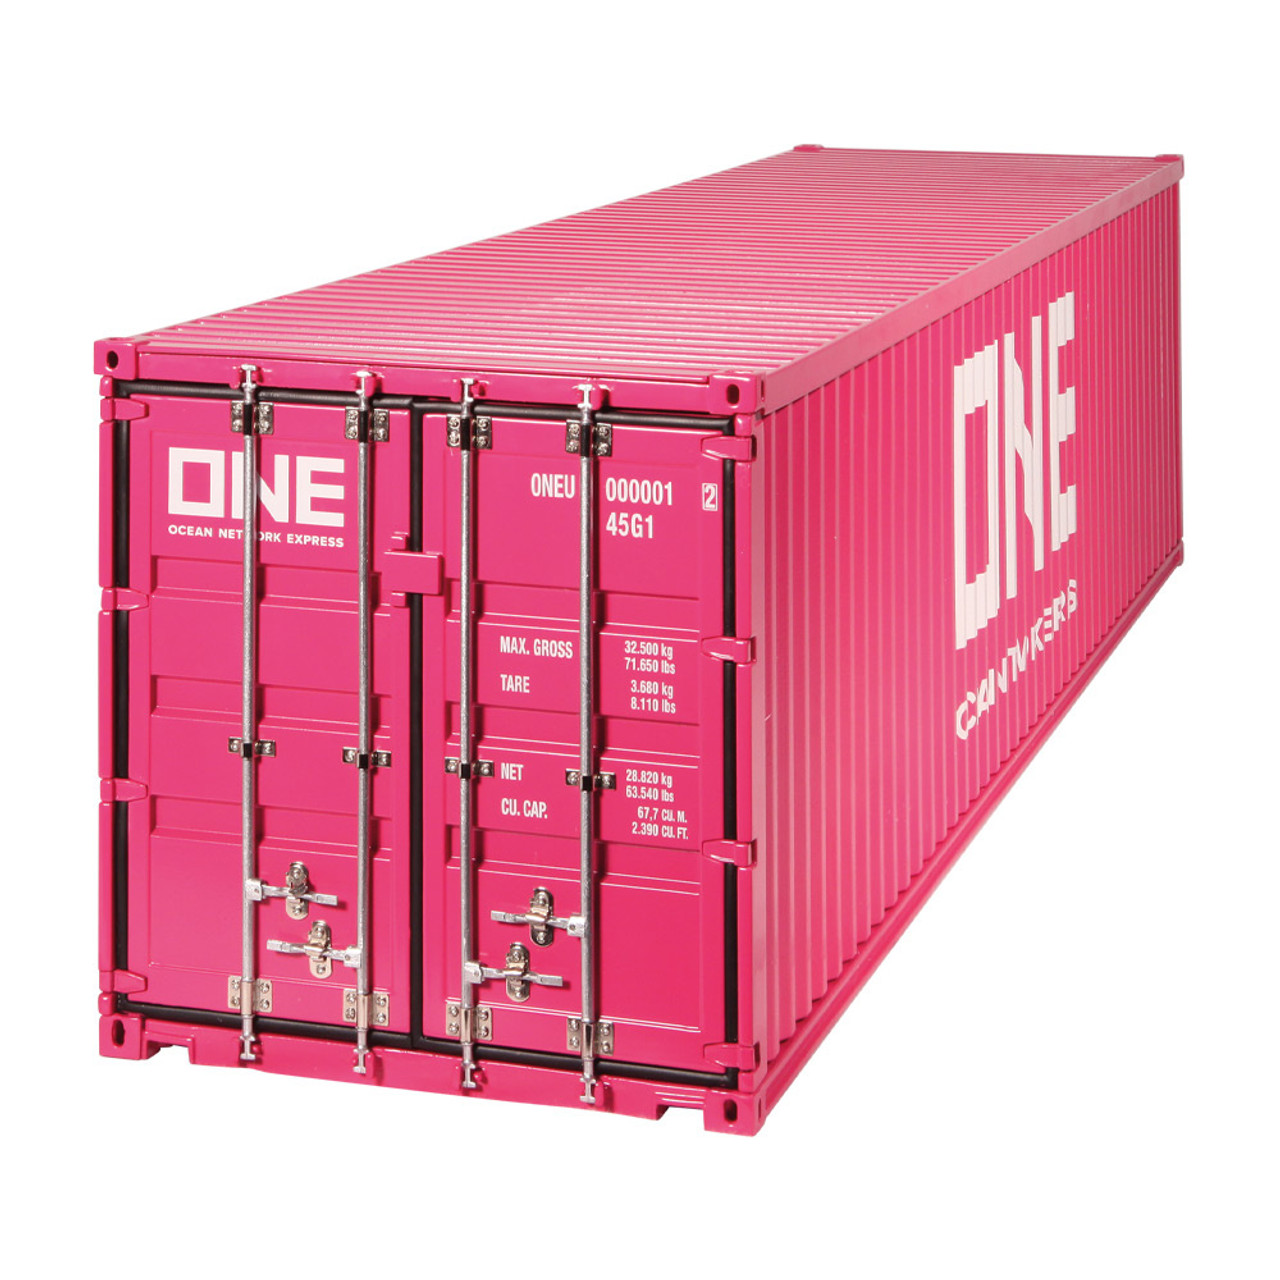 1/18 NZG Trailer EU & 40 Ft Container "ONE" Magenta Diecast Model